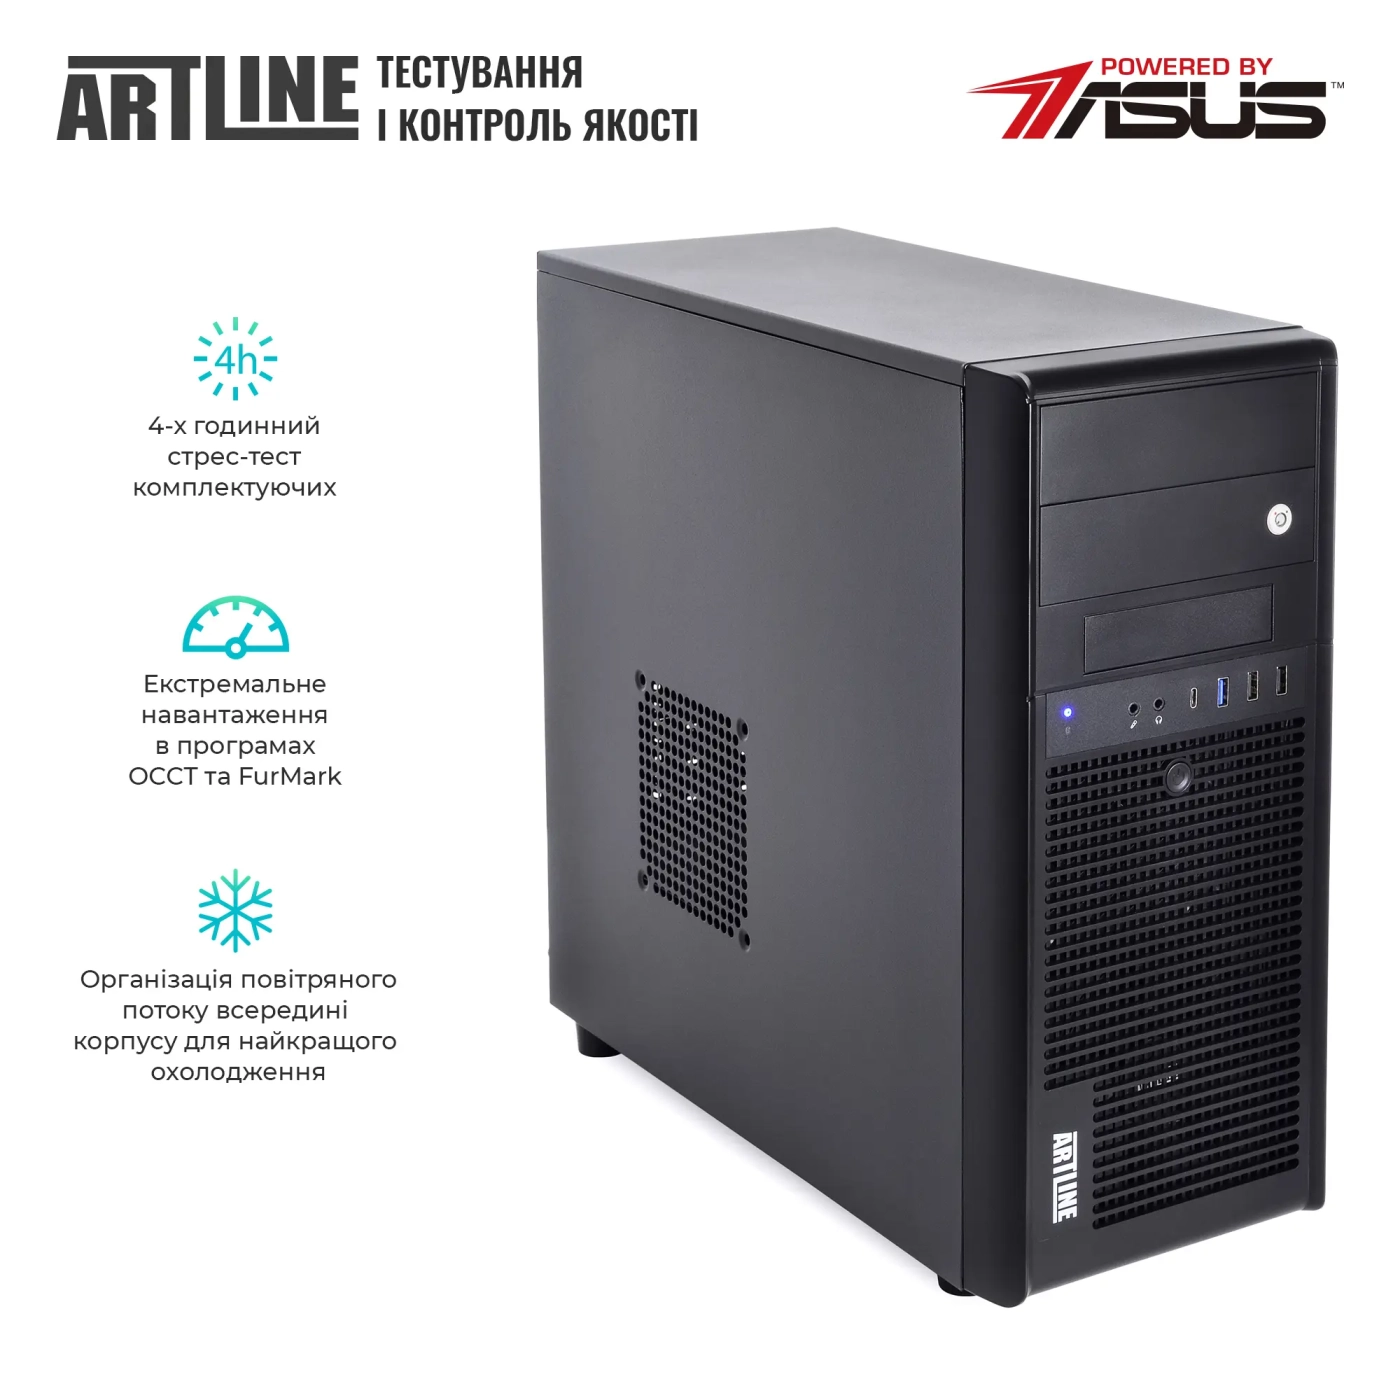 Купить Сервер ARTLINE Business T37 (T37v41) - фото 7